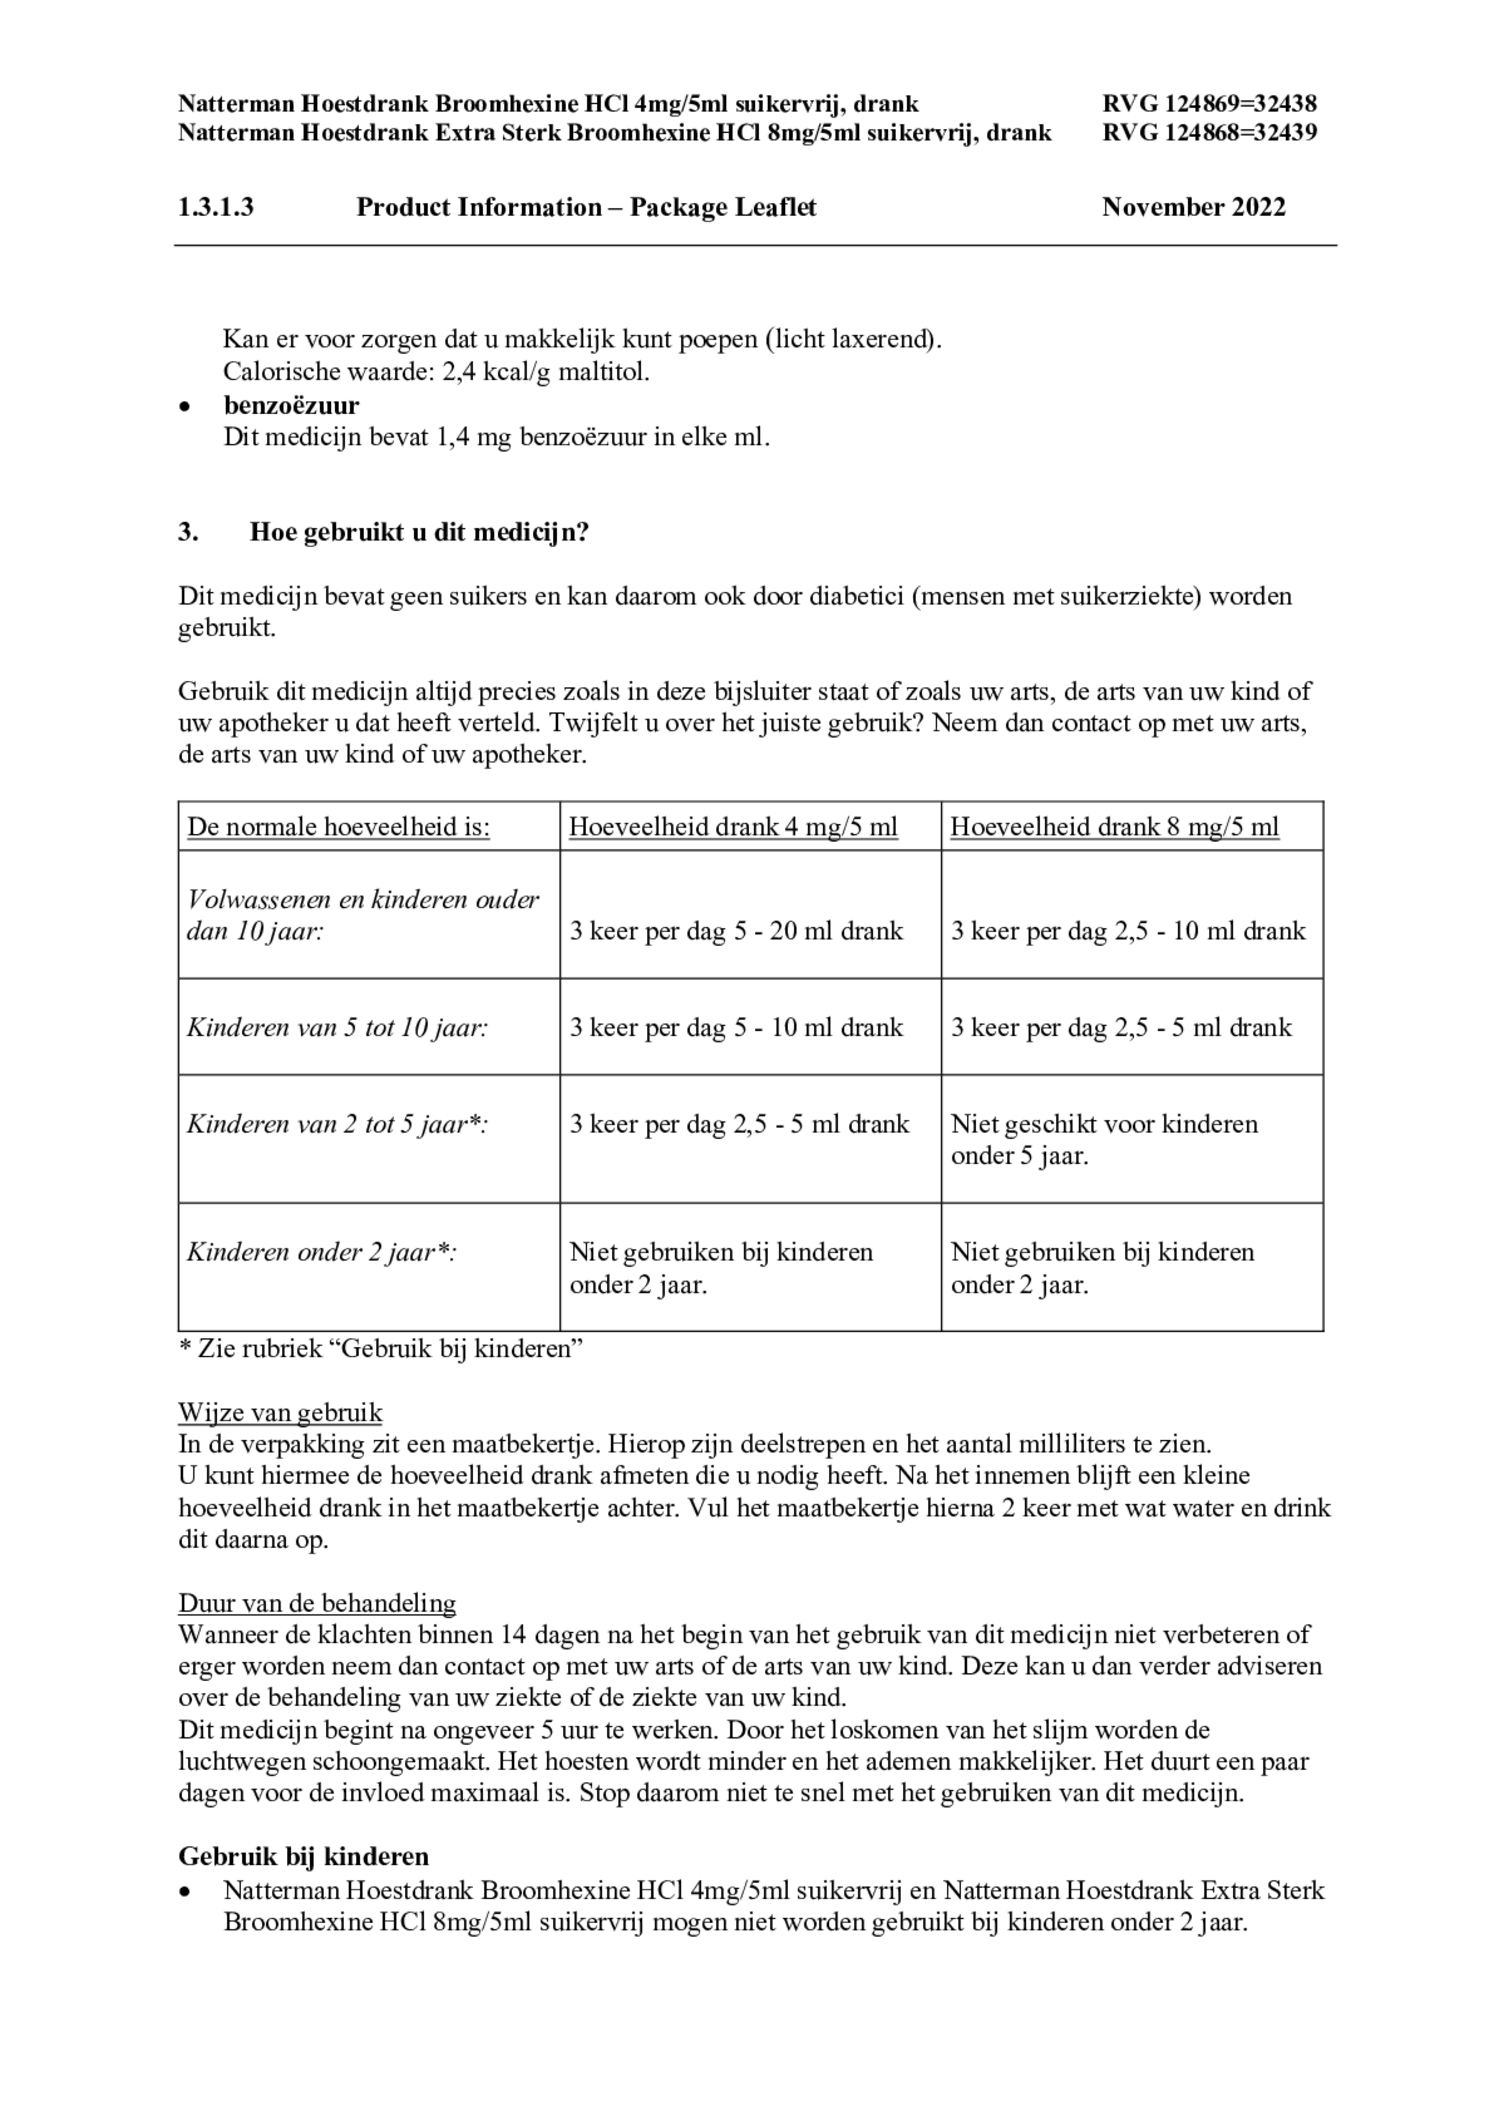 Hoestdrank Broomhexine HCI 4mg/5ml suikervrij afbeelding van document #3, bijsluiter